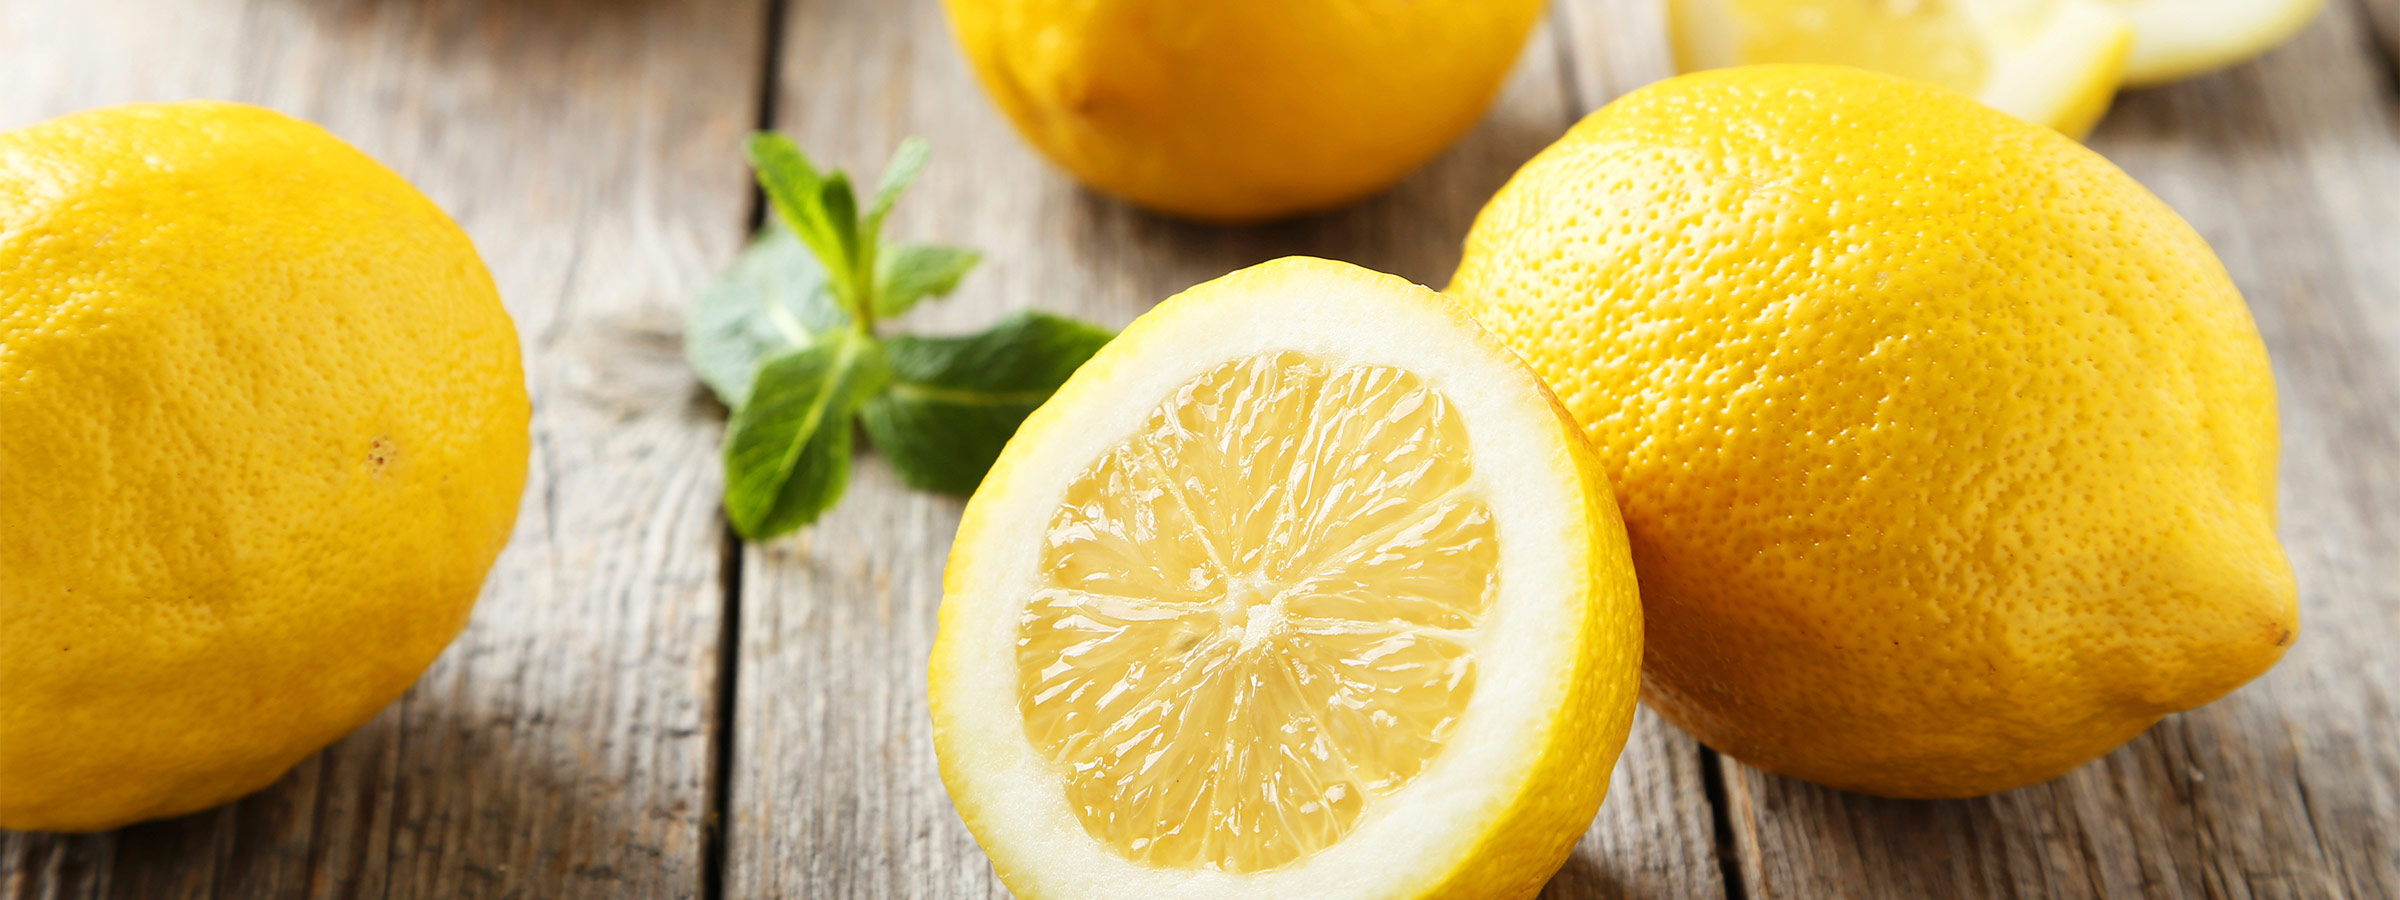 More About Lemon Oil